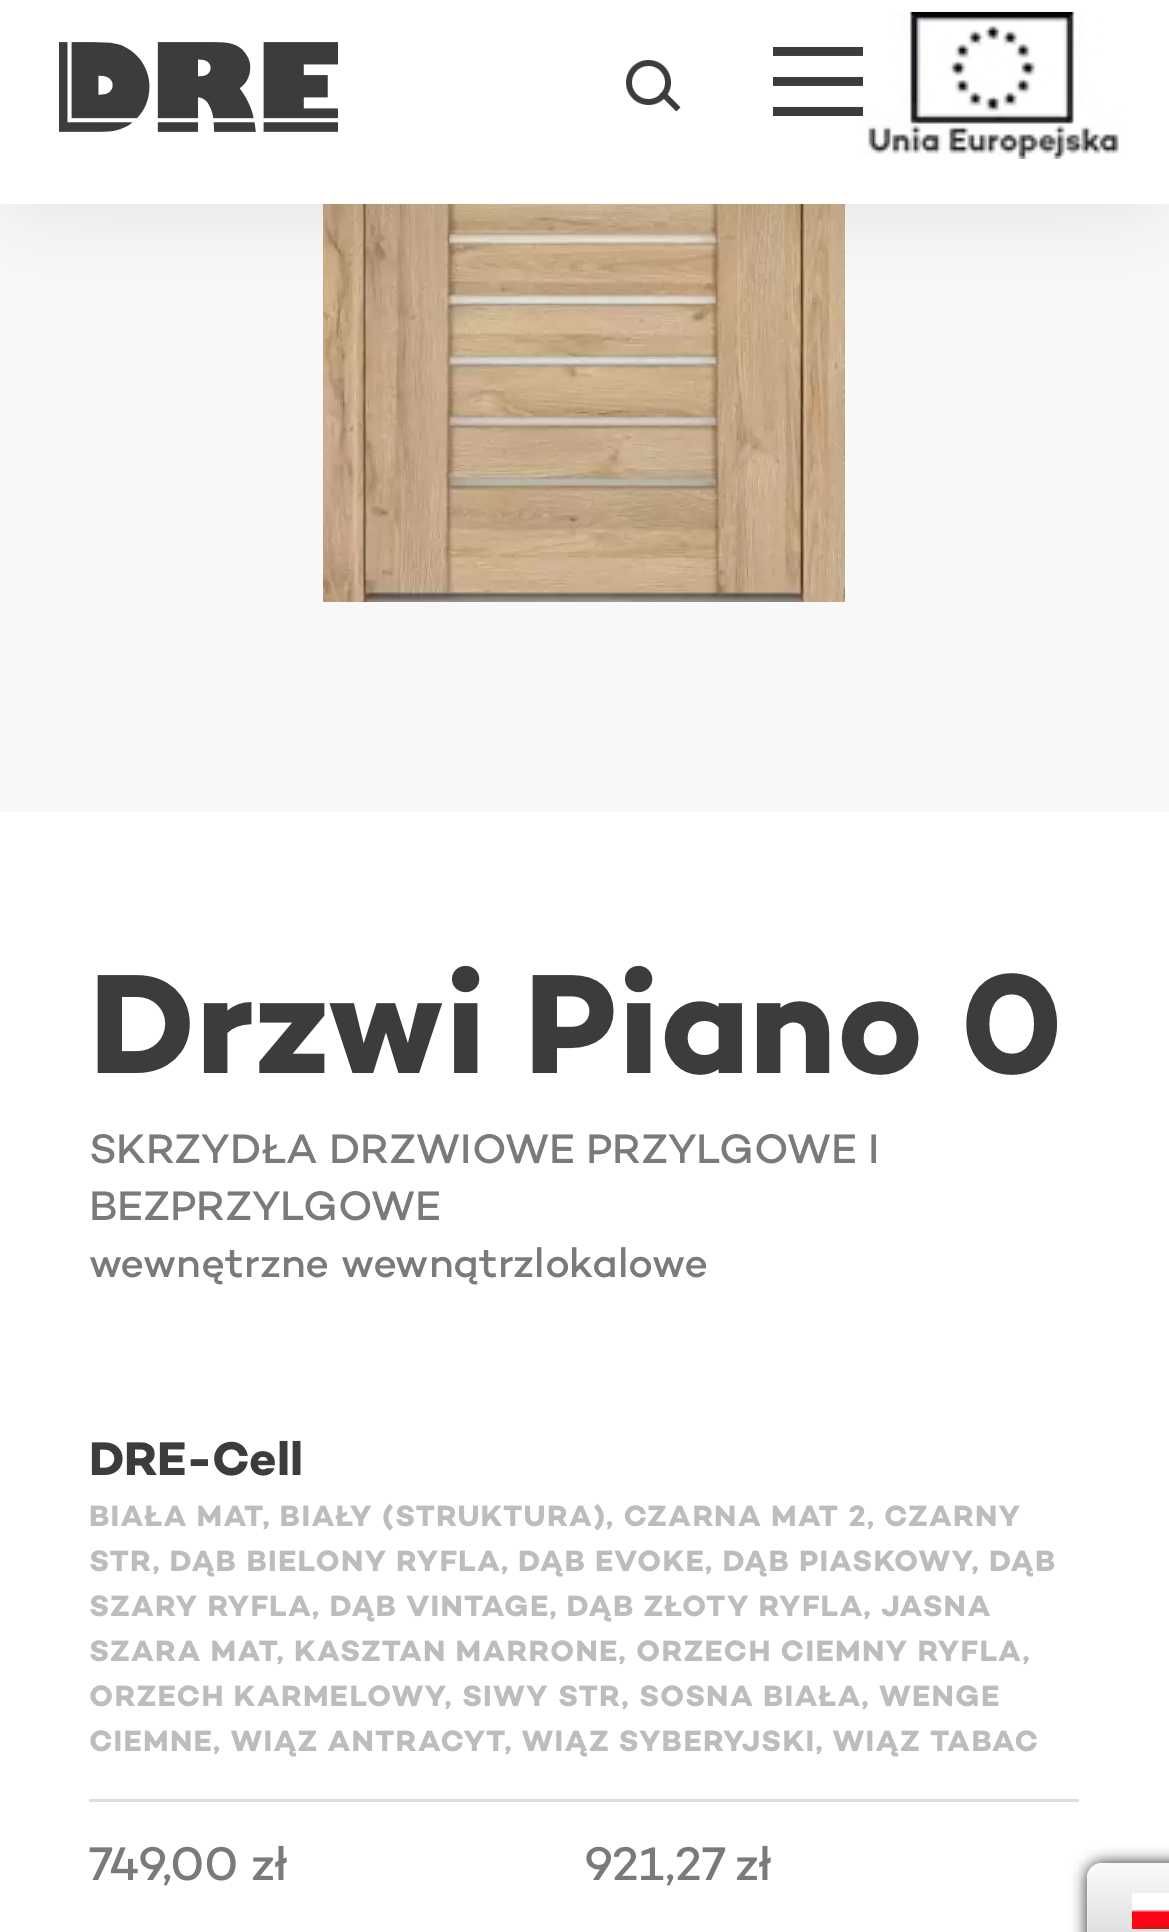 Drzwi wewnętrzne, DRE Piano, Orzech ryfla, 70L, Nowe